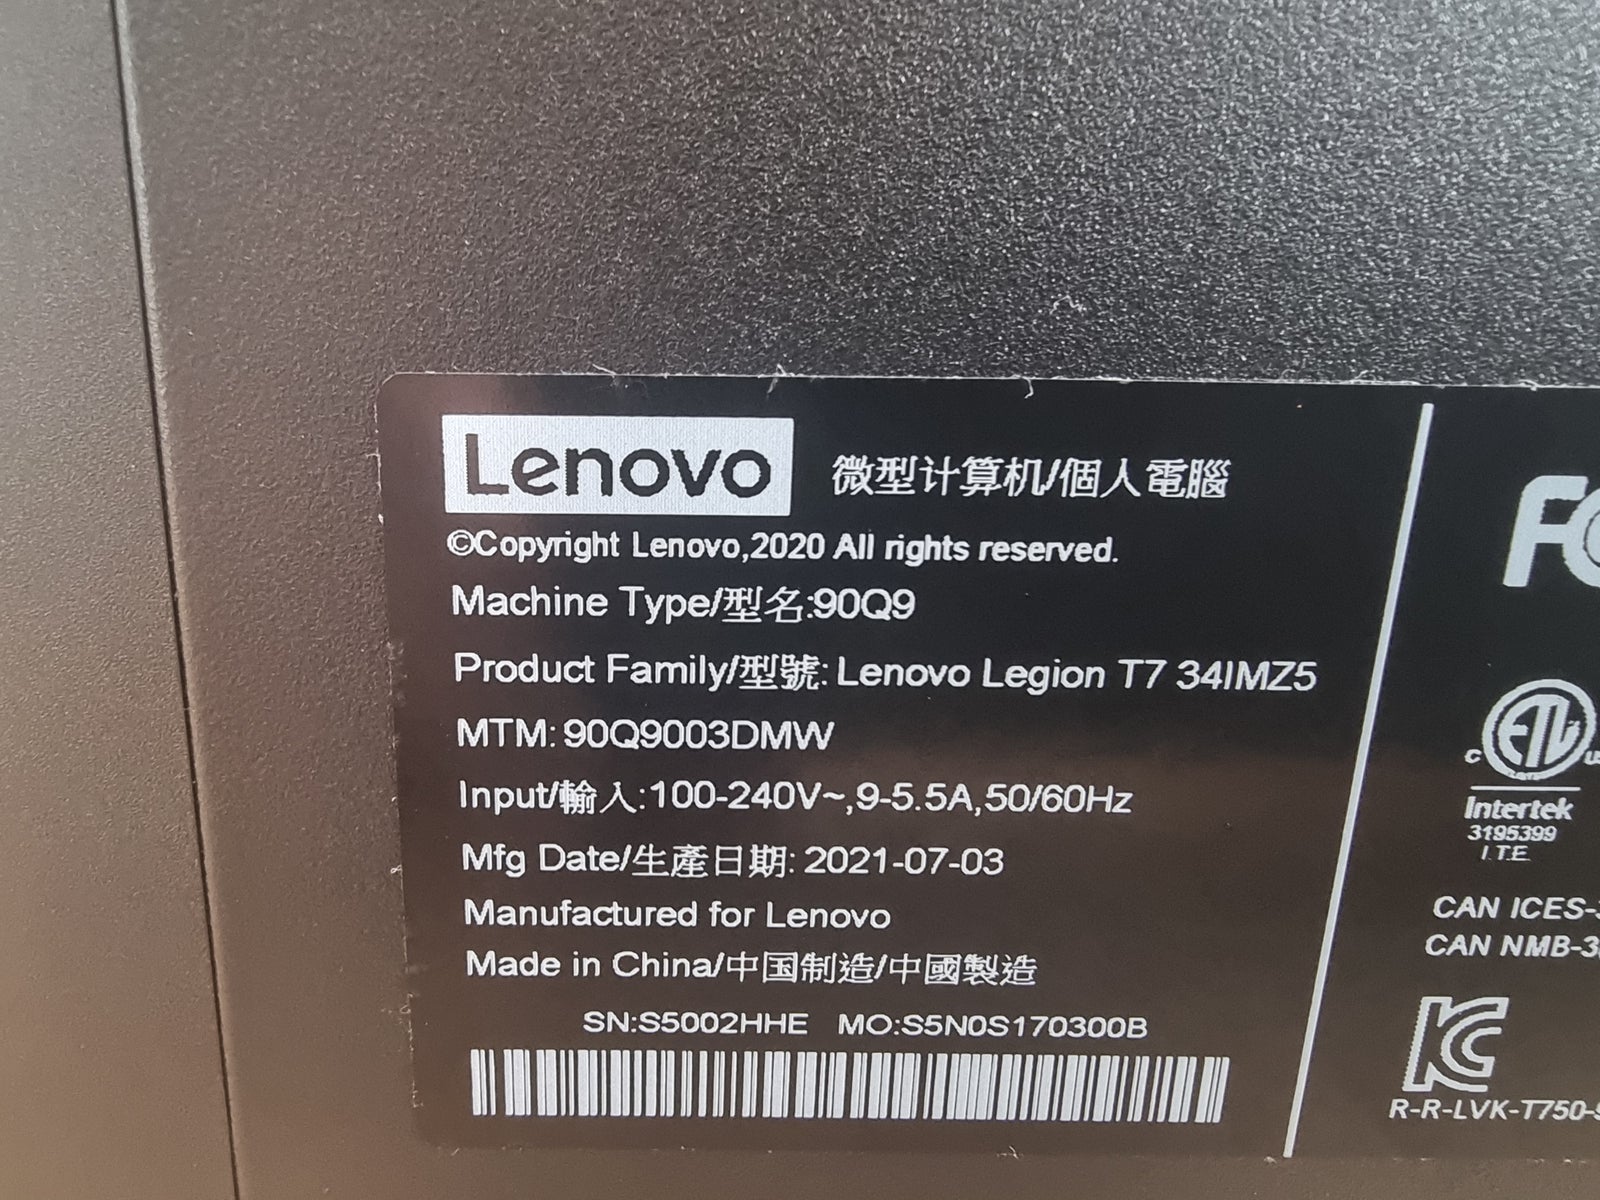 Lenovo Legion i7 3080 med mere end 2 års garanti!